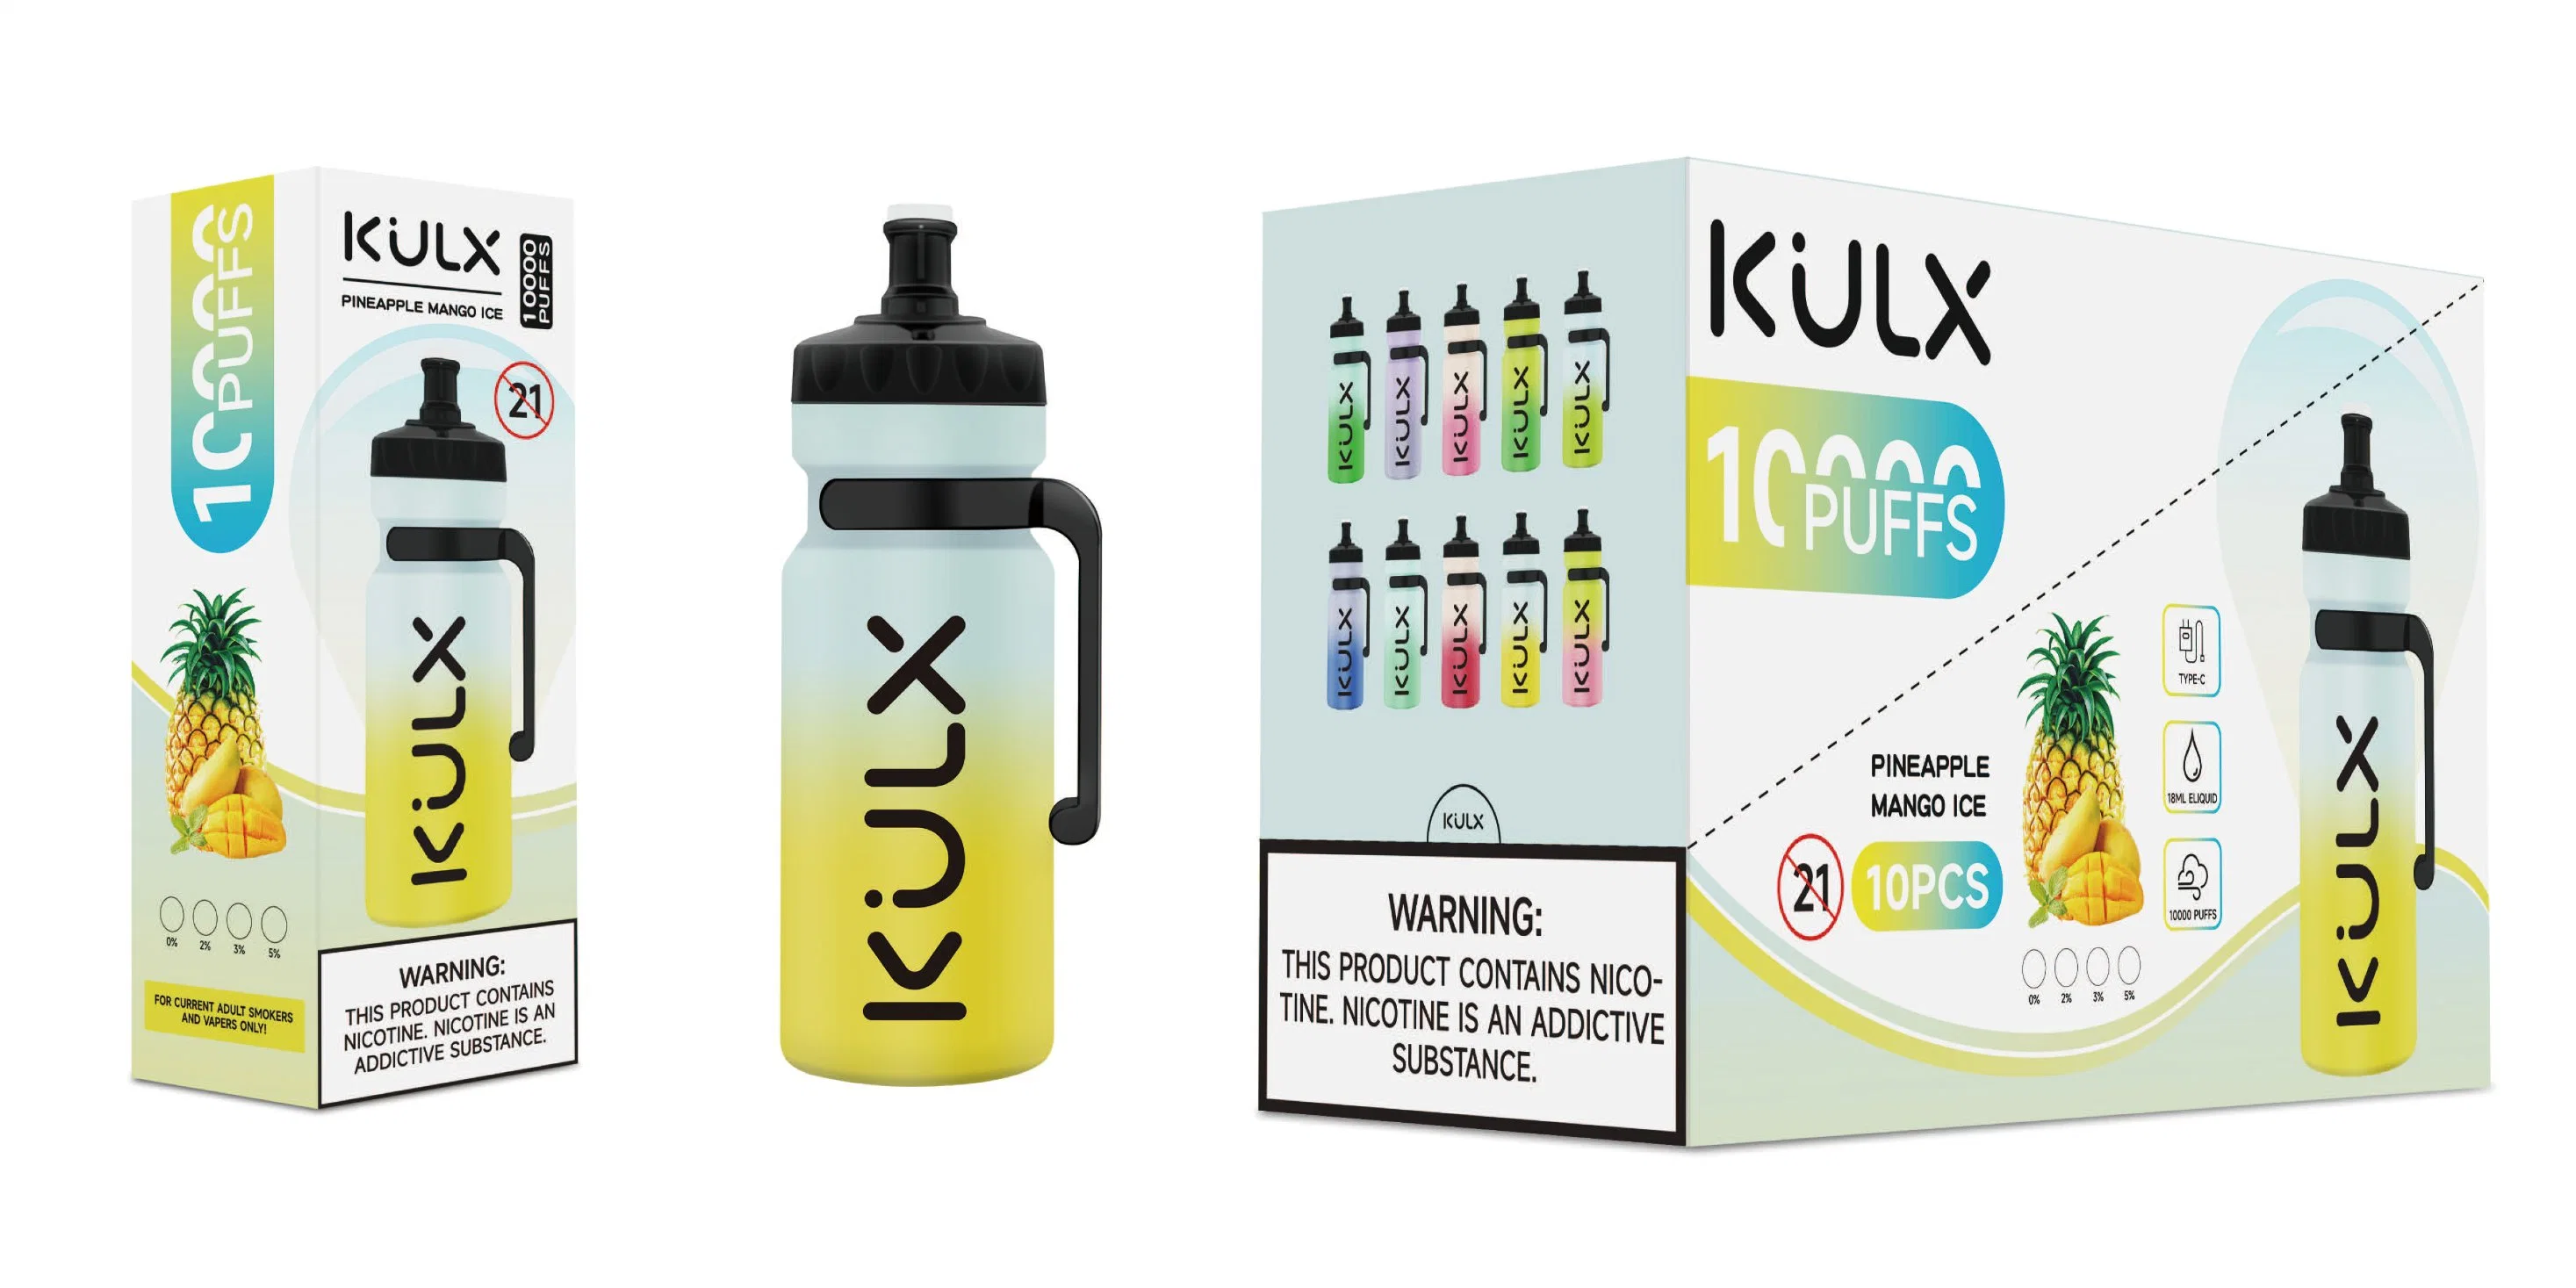 Kulx 10000/10K Puffs Vape Factory 2% 3% 5% Nice Device Großhandel/Lieferant Einweg-Vaporizer Big Puffs Einweg-Vape